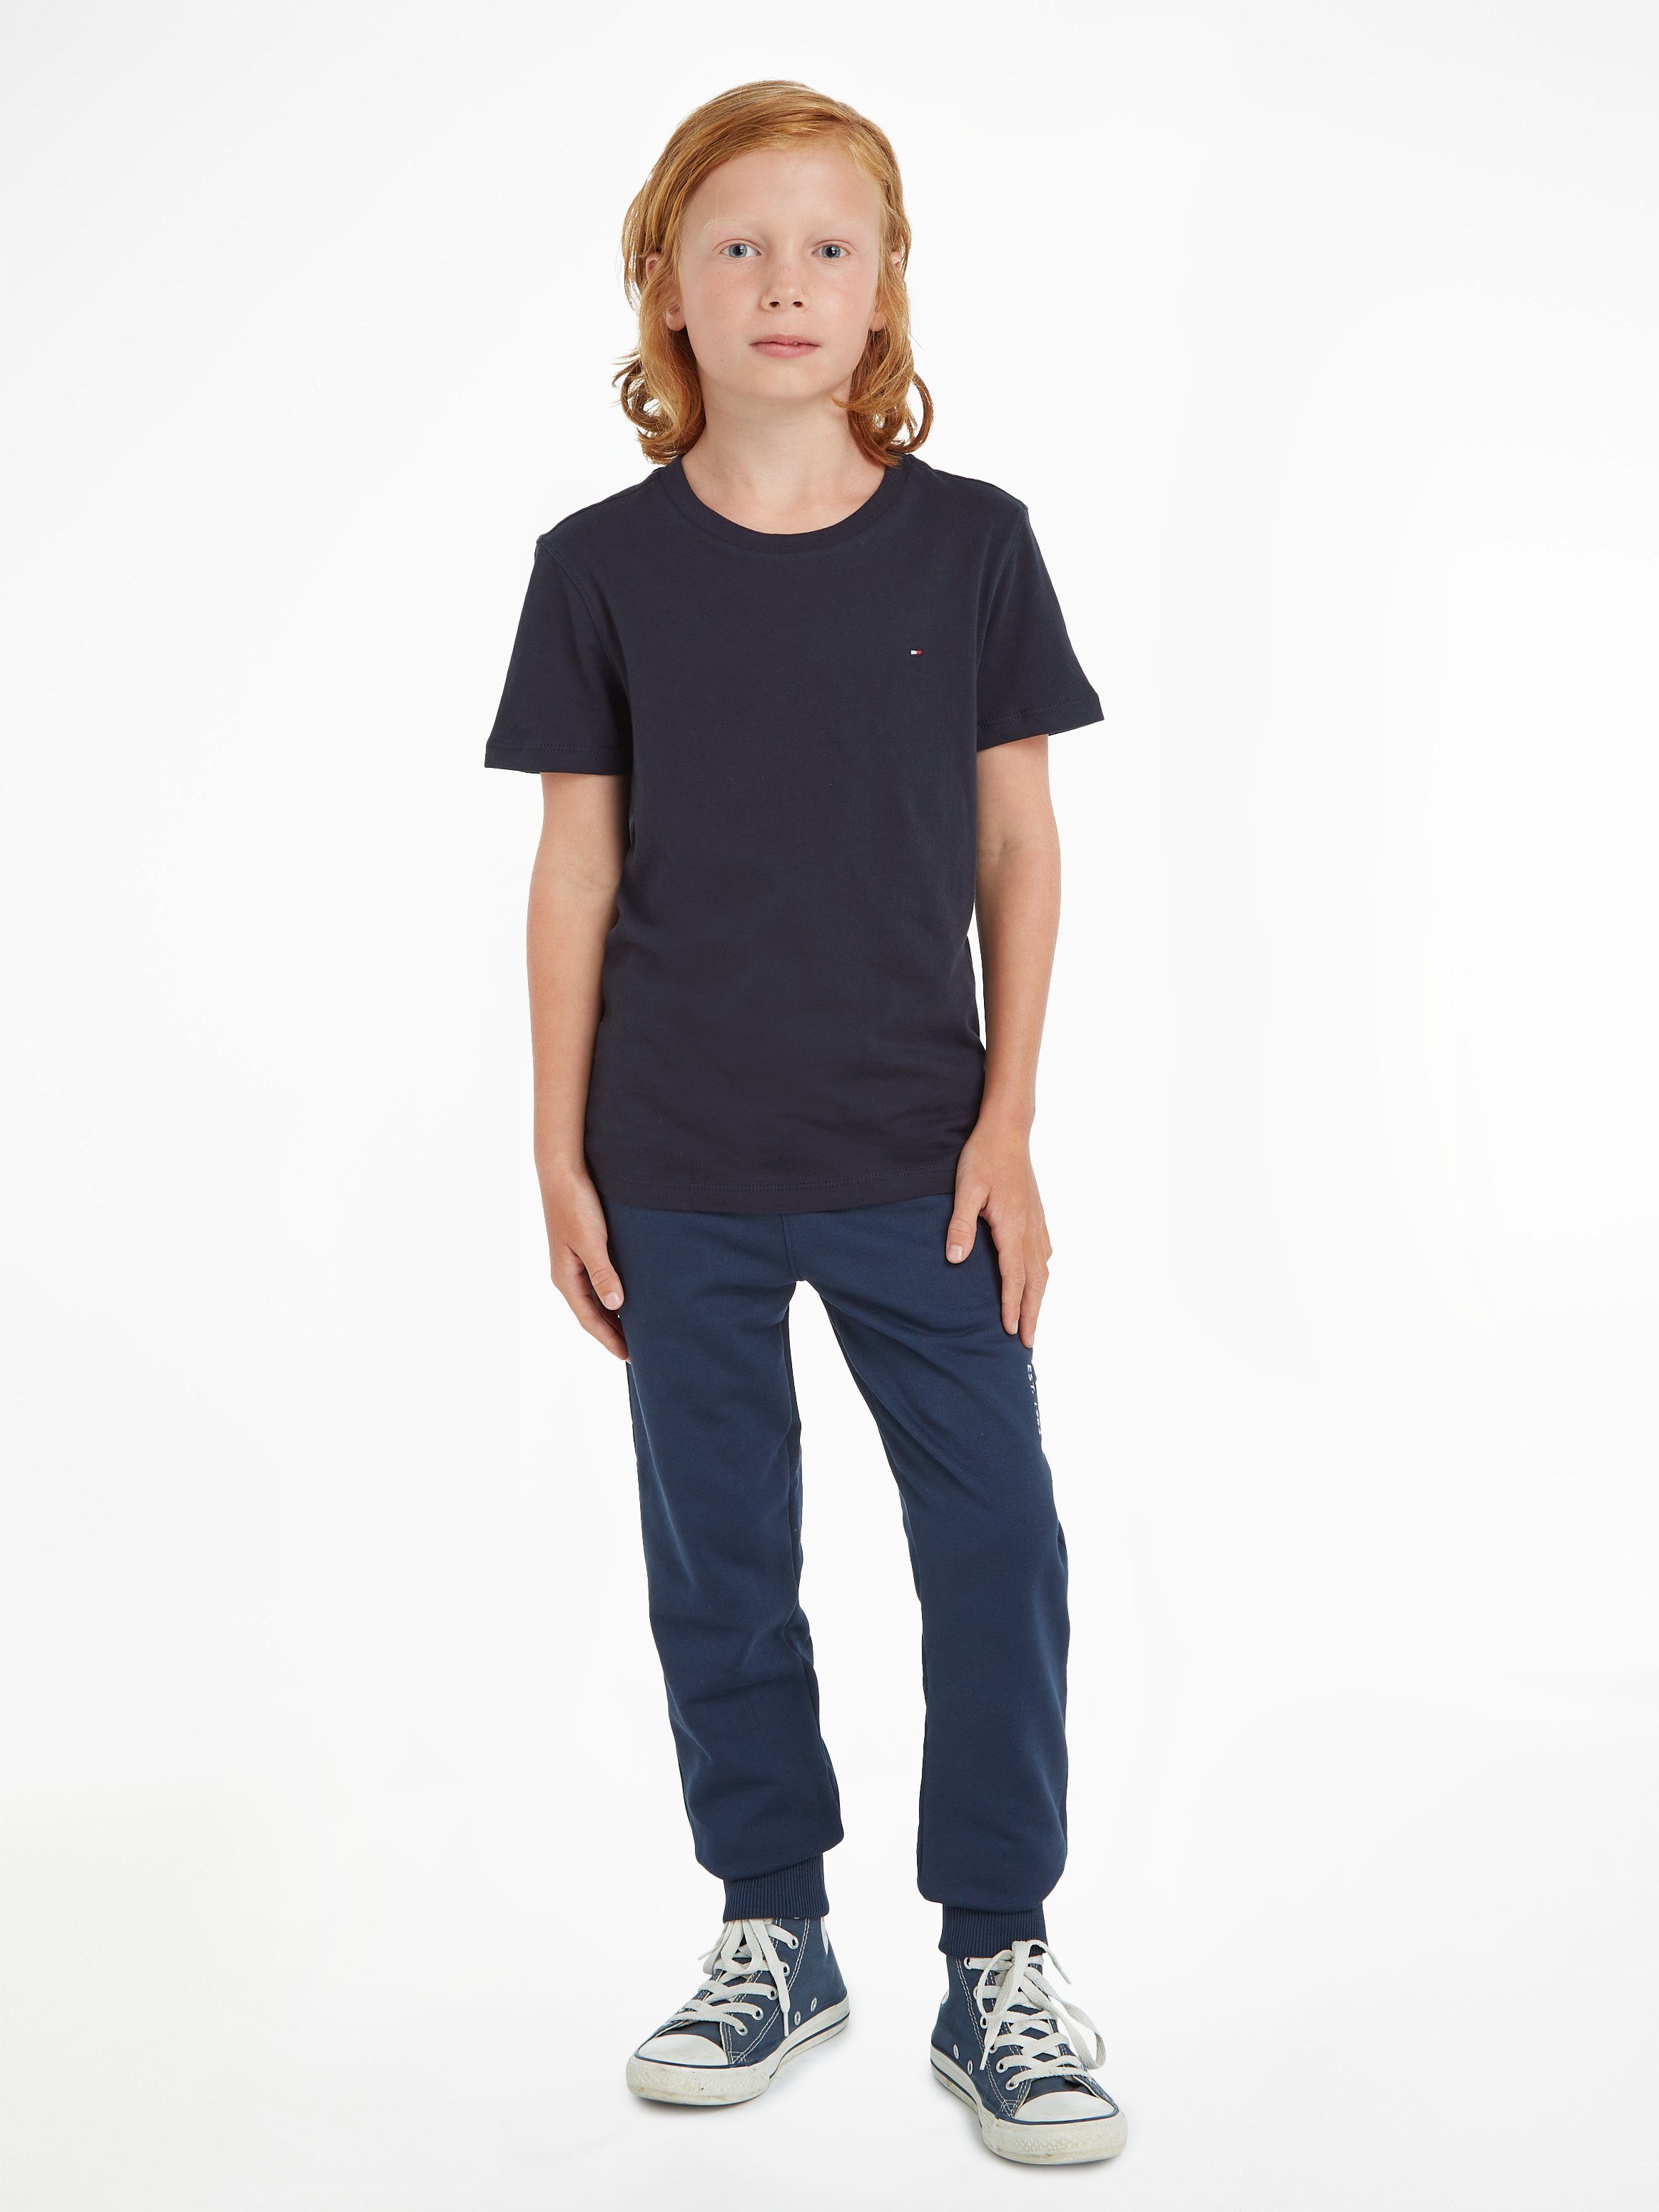 Tommy Hilfiger T-Shirt BOYS BASIC KNIT Ausschnitt Label am Mit farbigem hinten Kids Jungen, MiniMe,für Kinder CN und Stickerei Junior